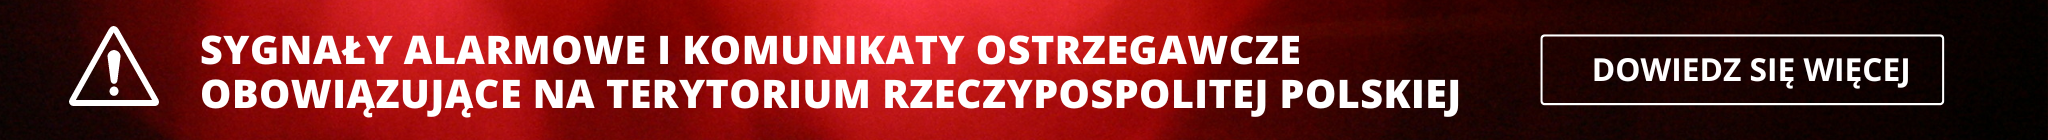 Banner - Sygnały alarmowe i komunikaty ostrzegawcze obowiązujące na terytorium Rzeczypospolitej Polskiej 